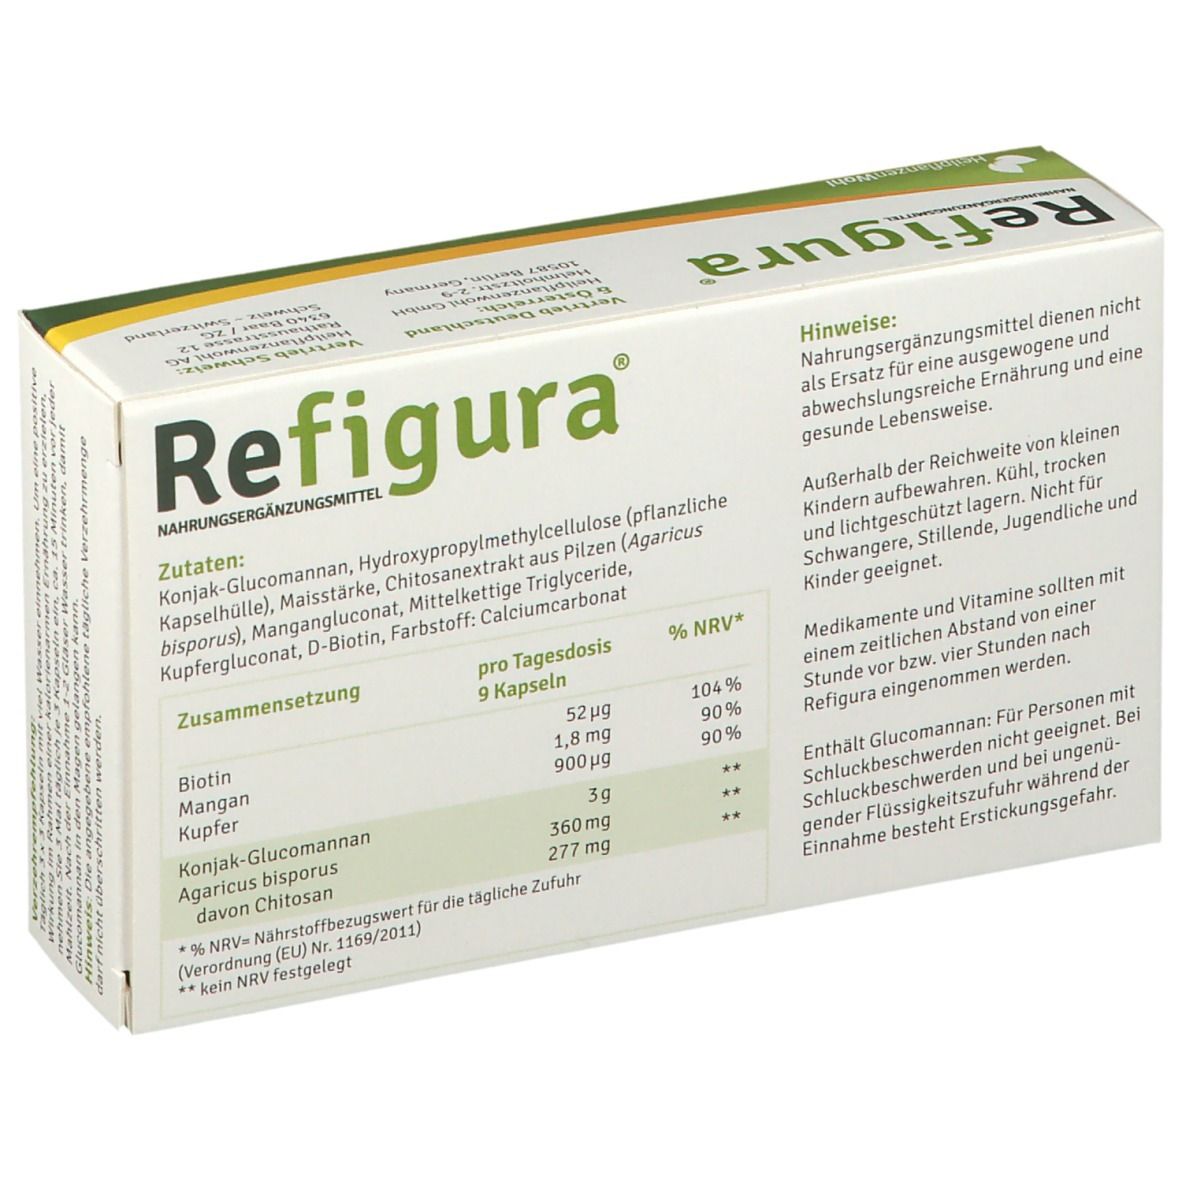 REFIGURA® Kapseln - Unterstützung beim Gewichtsverlust vegan